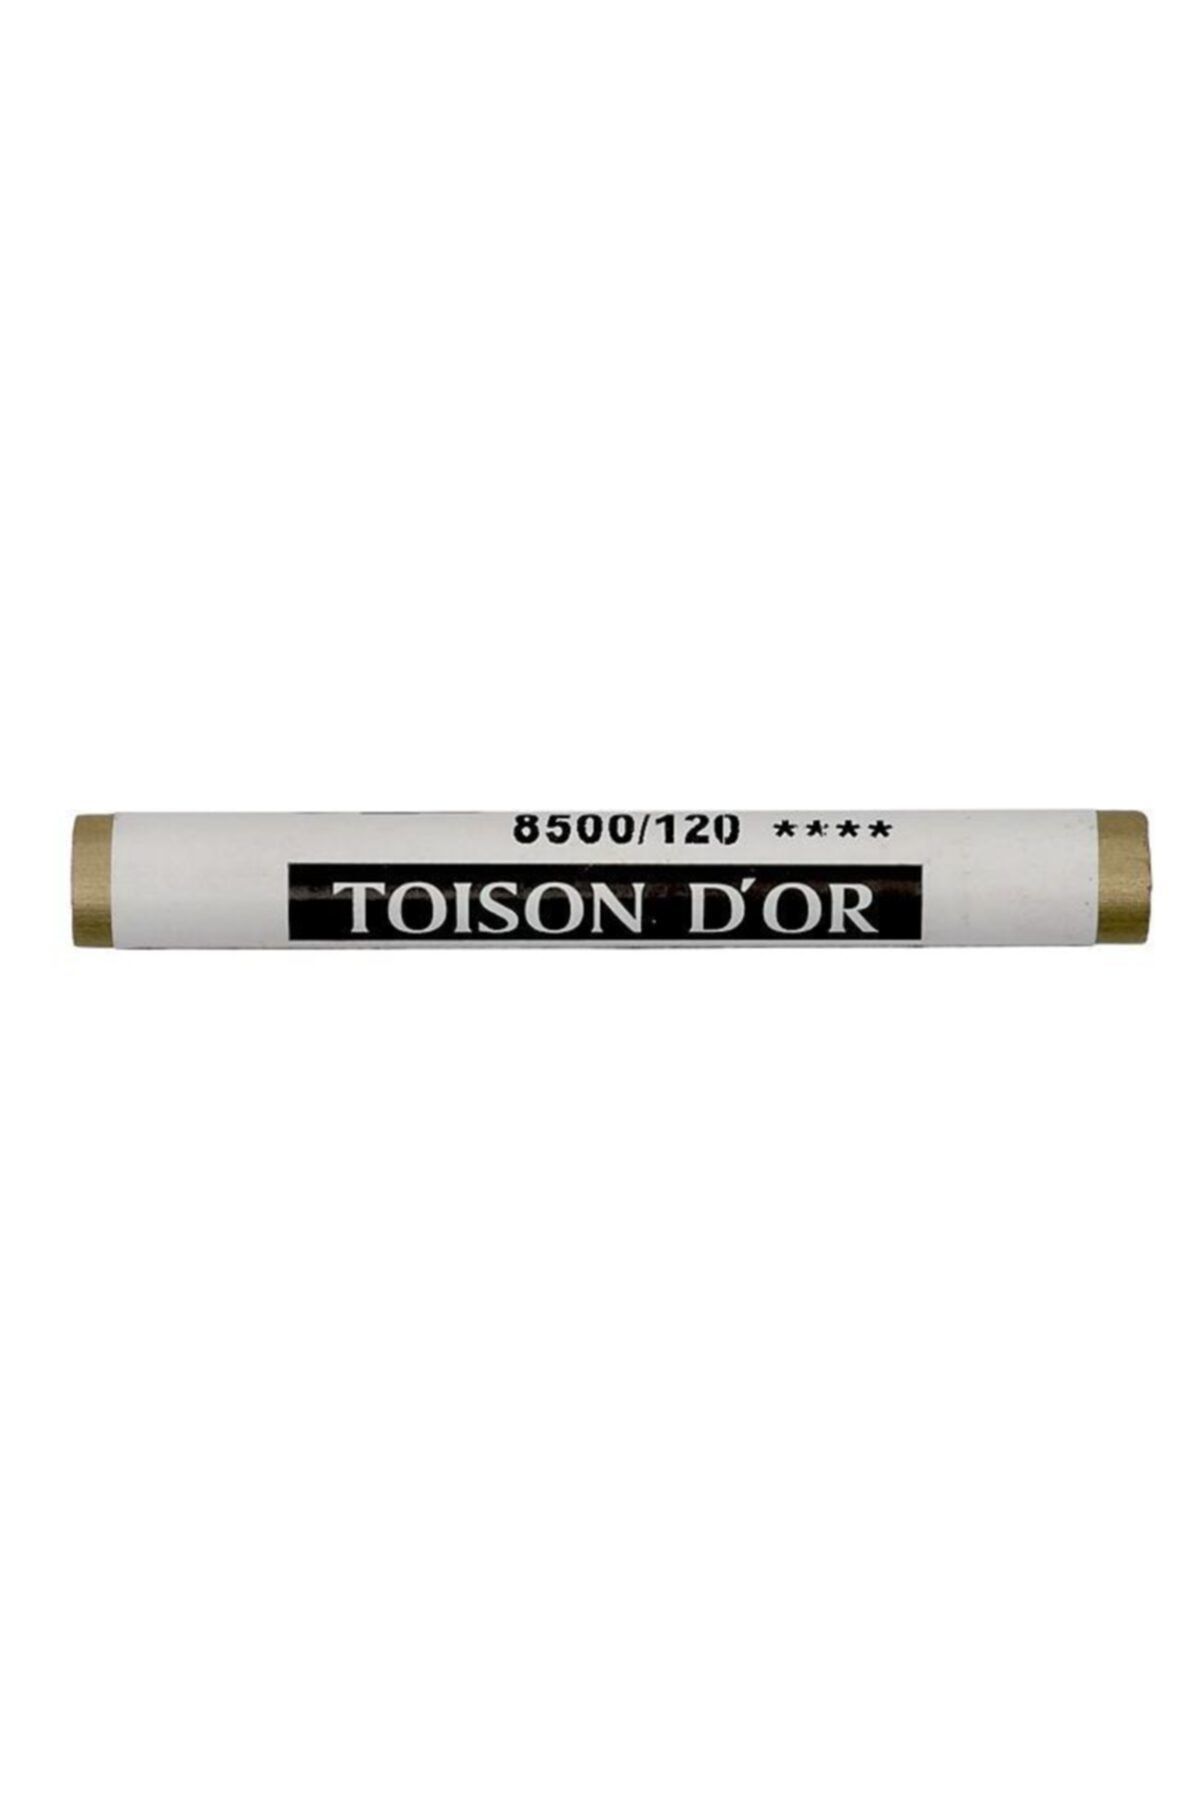 Kohinoor Koh-i-noor Toison D'or Soft Pastel 8500/120 Standart Gold